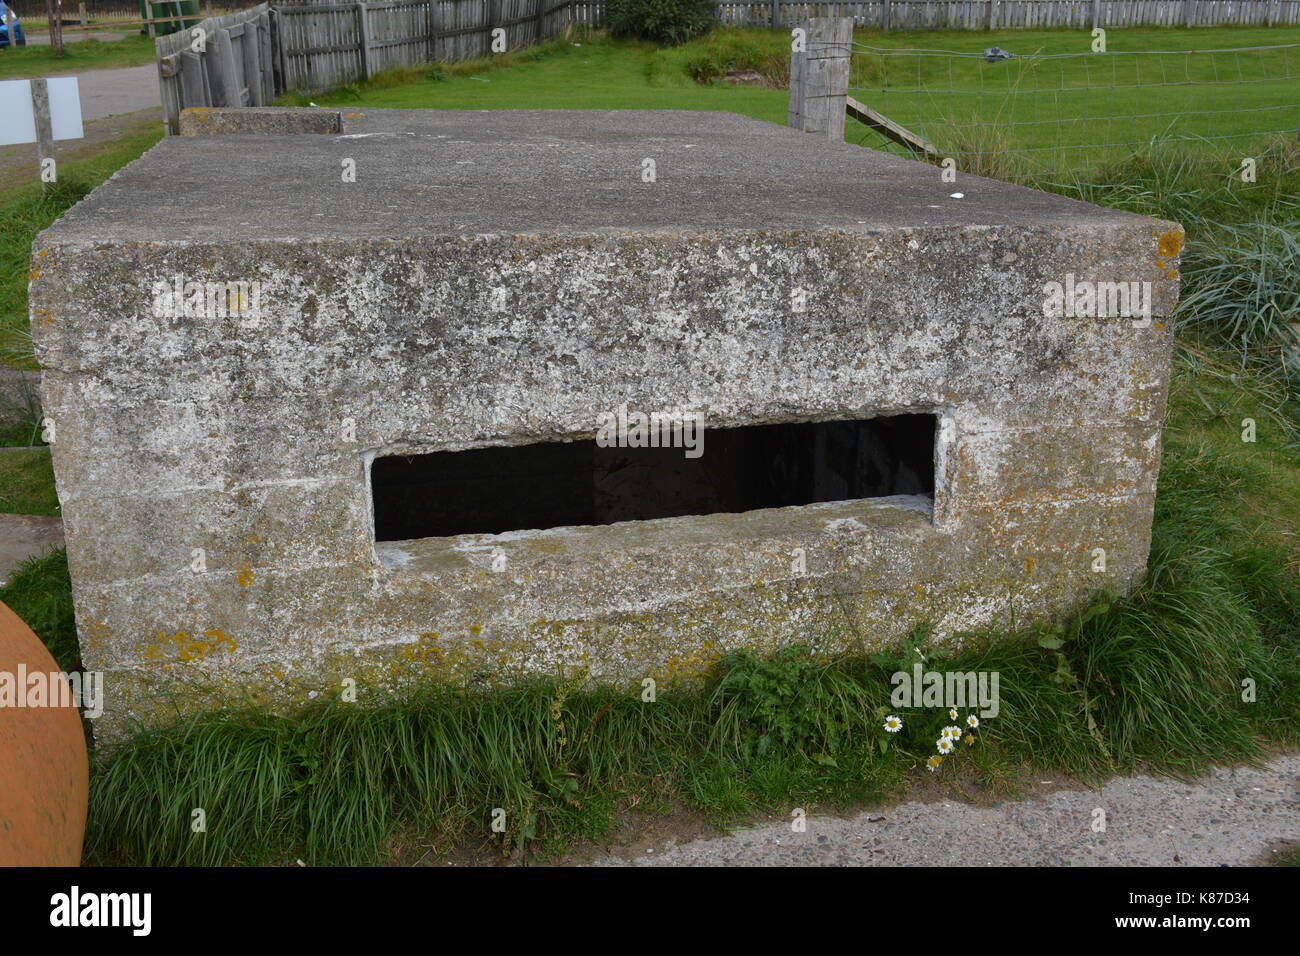 La II Guerra Mundial bunker de hormigón armado pildorero pastillero armament mirando al mar justo fuera de la playa cromarty firth en Escocia Foto de stock